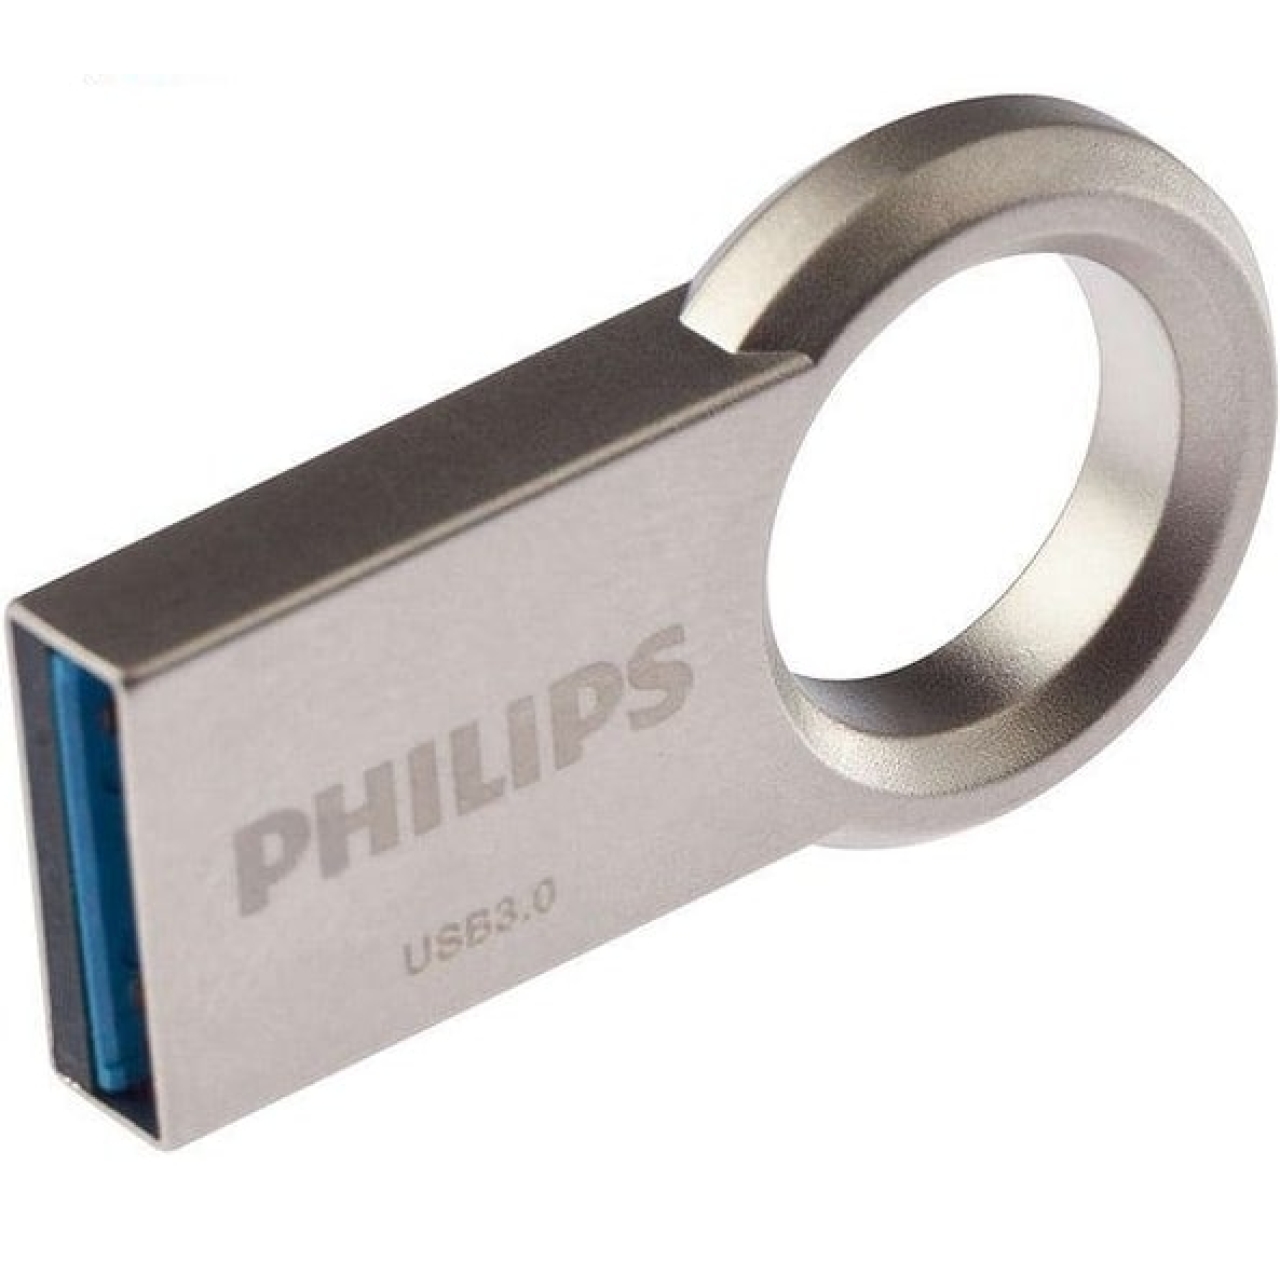 فلش مموری USB3.0 فیلیپس مدل Circle ظرفیت 16 گیگابایت